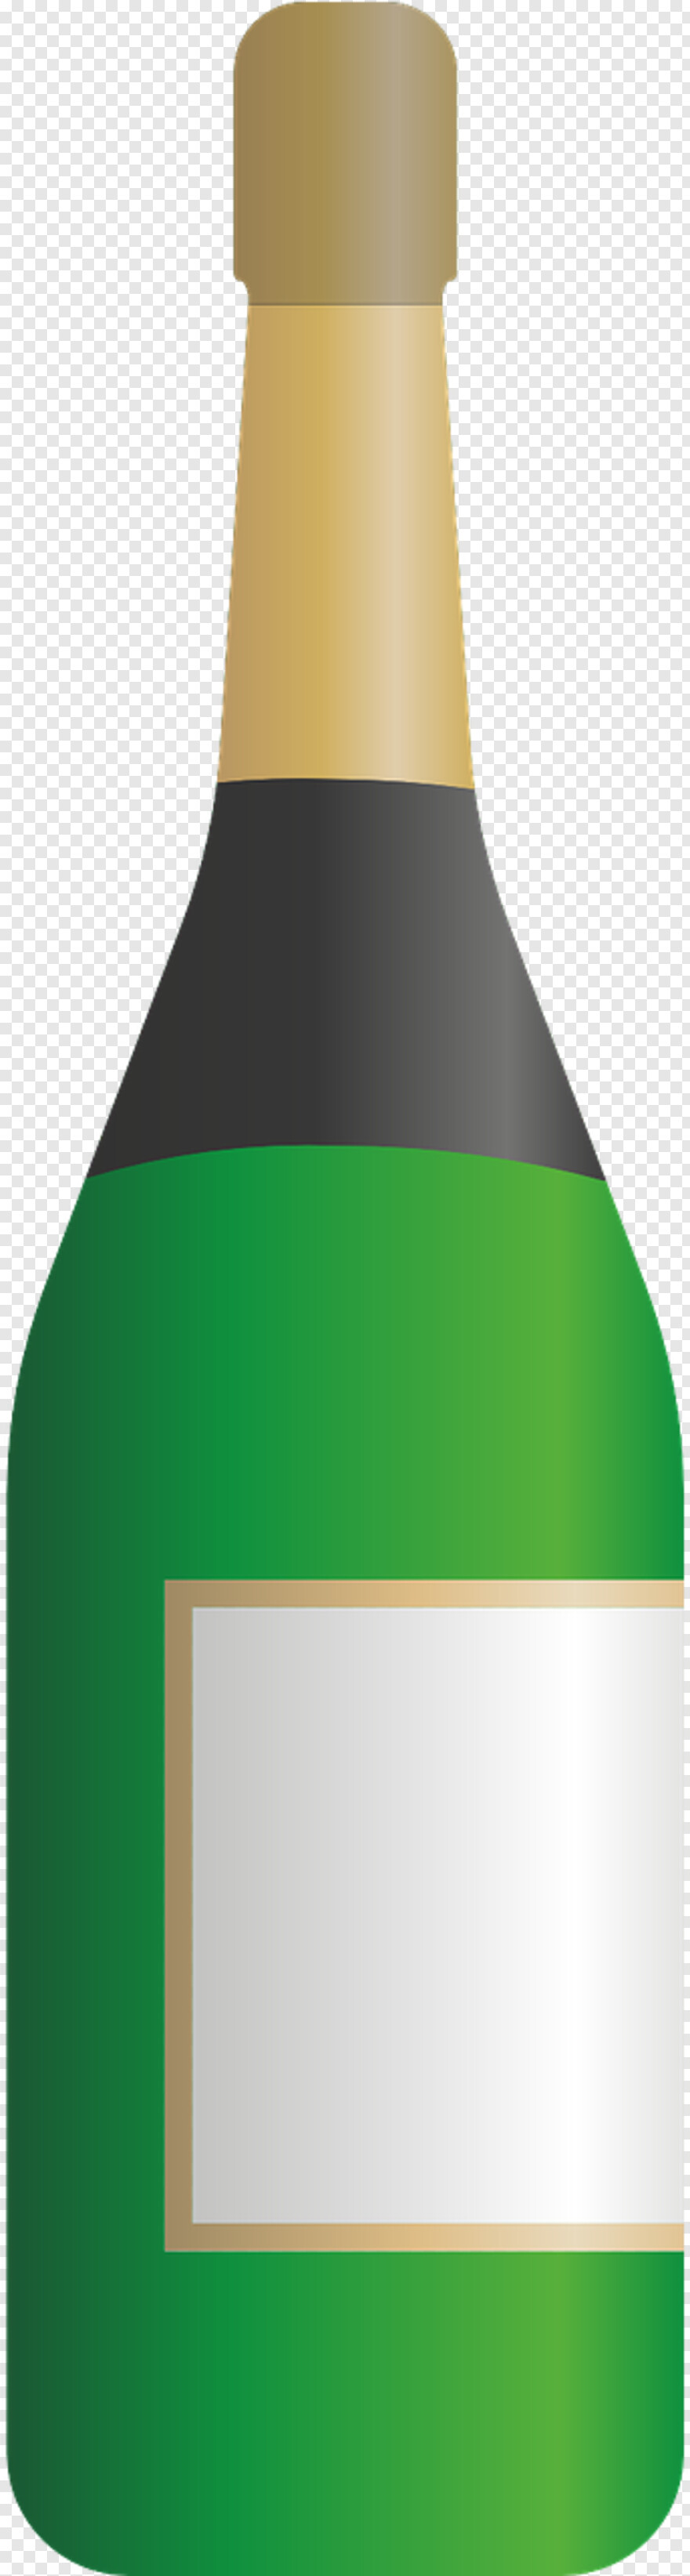 beer-bottle-vector # 324289